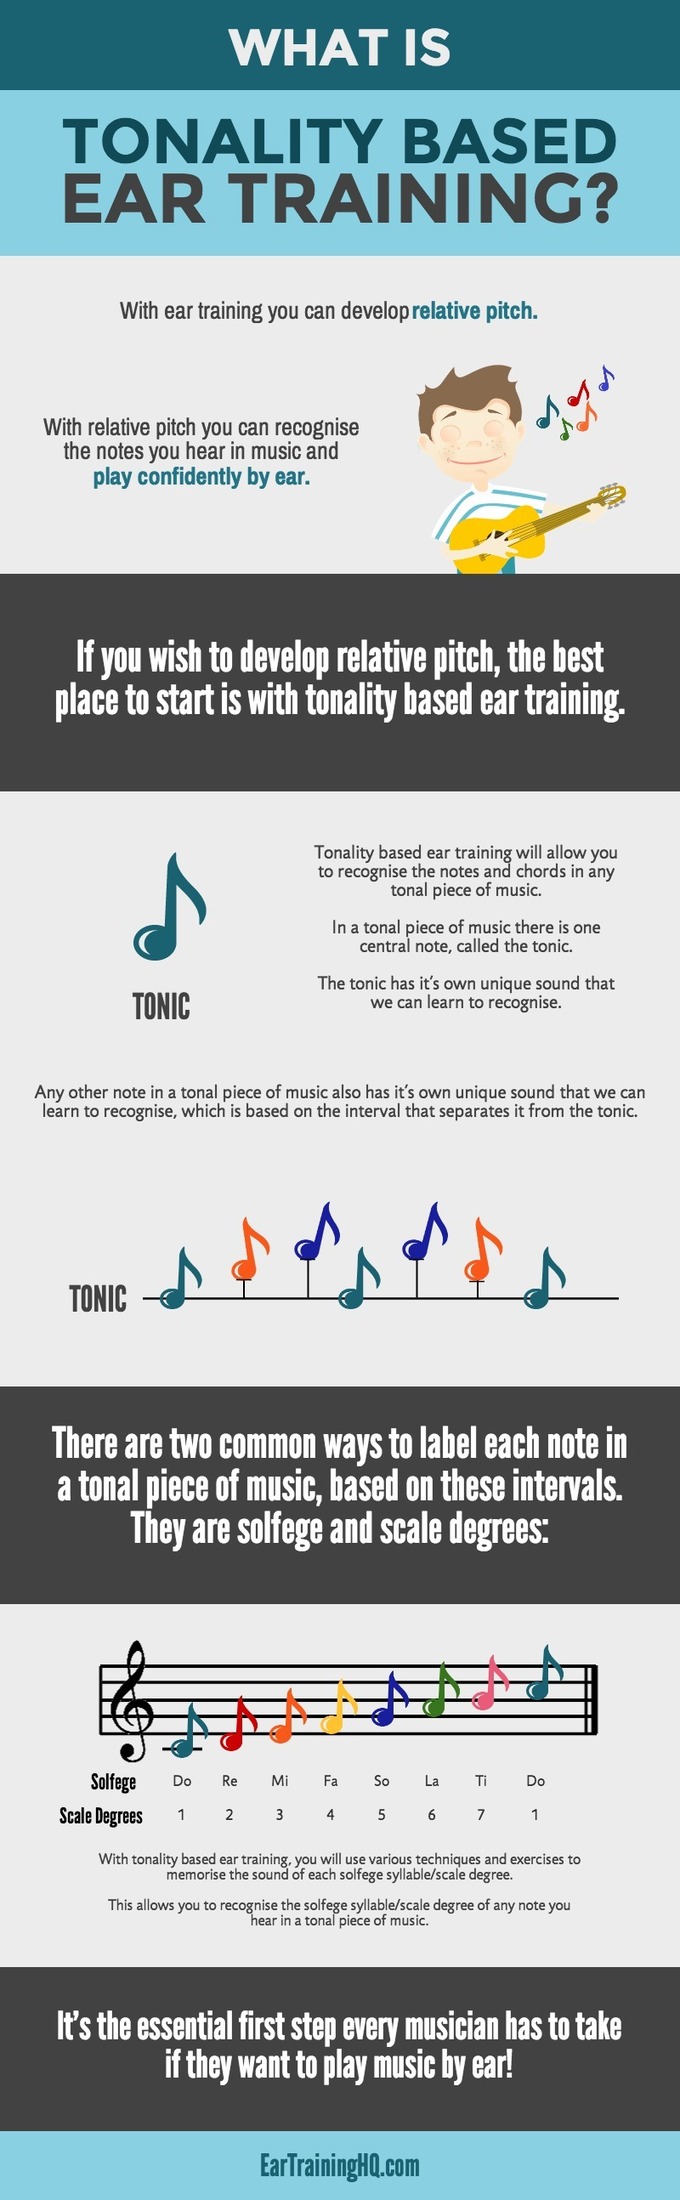 Tonality Based Ear Training Infographic